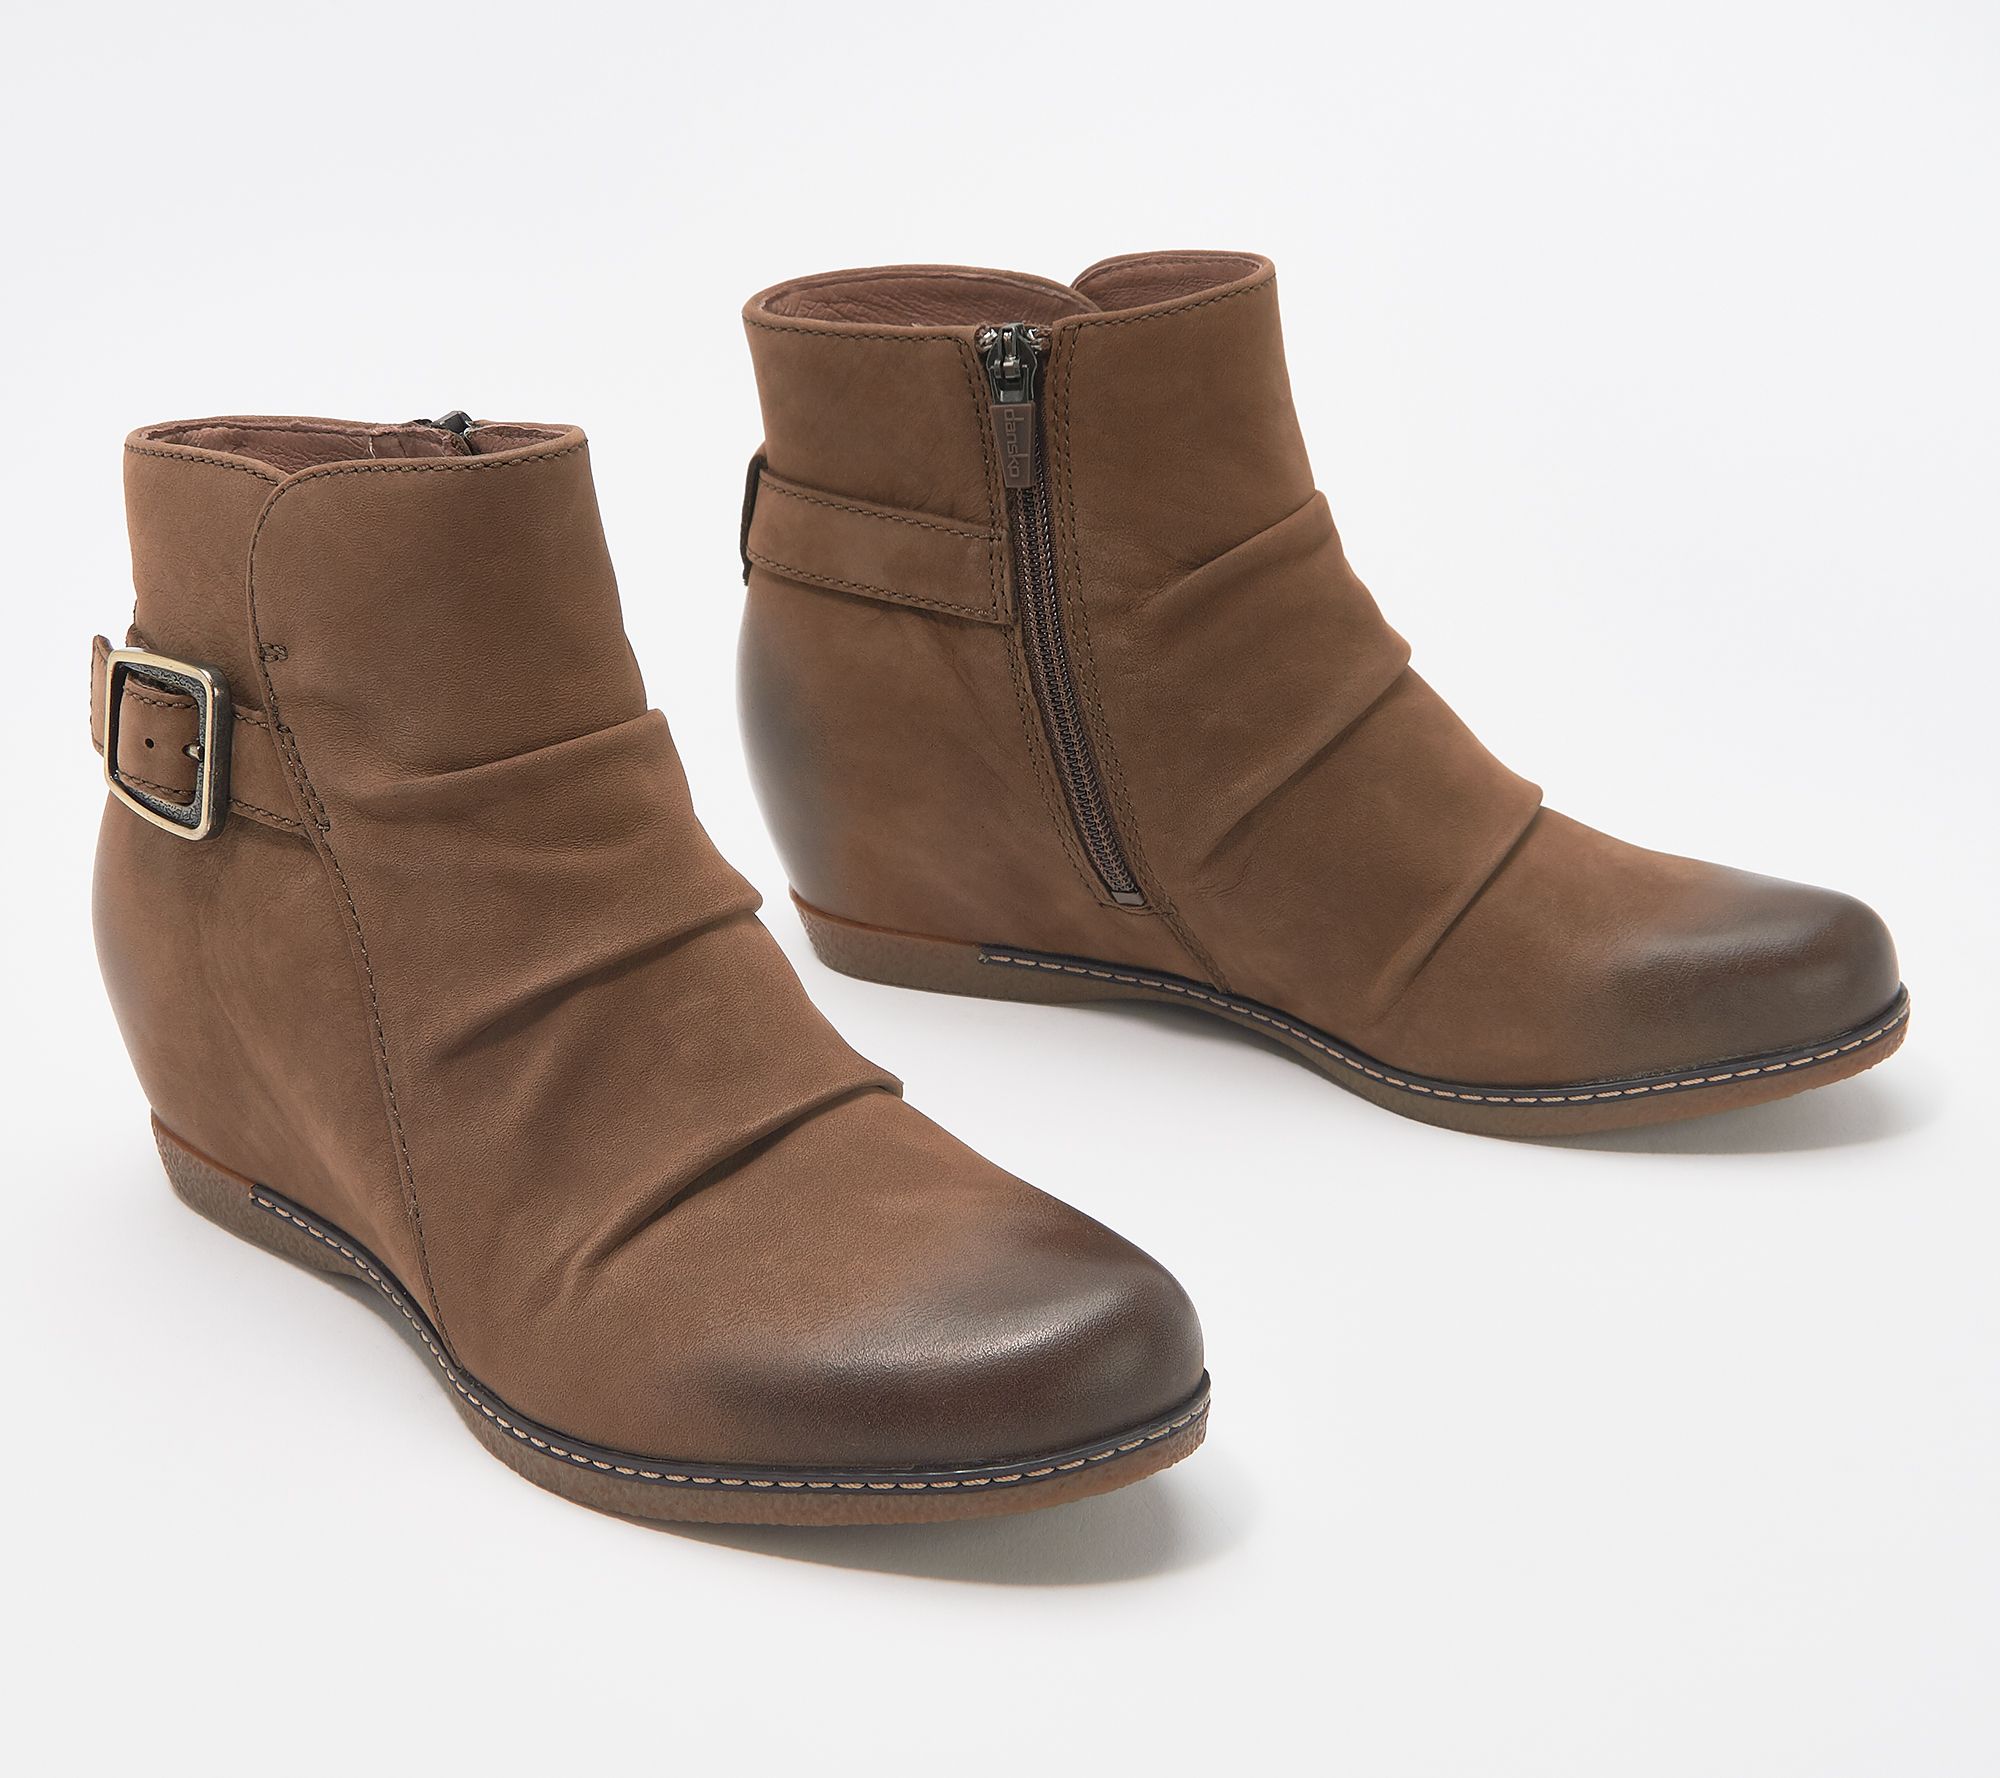 Dansko Burnished Nubuck Leather Wedge Boots - Lia - QVC.com